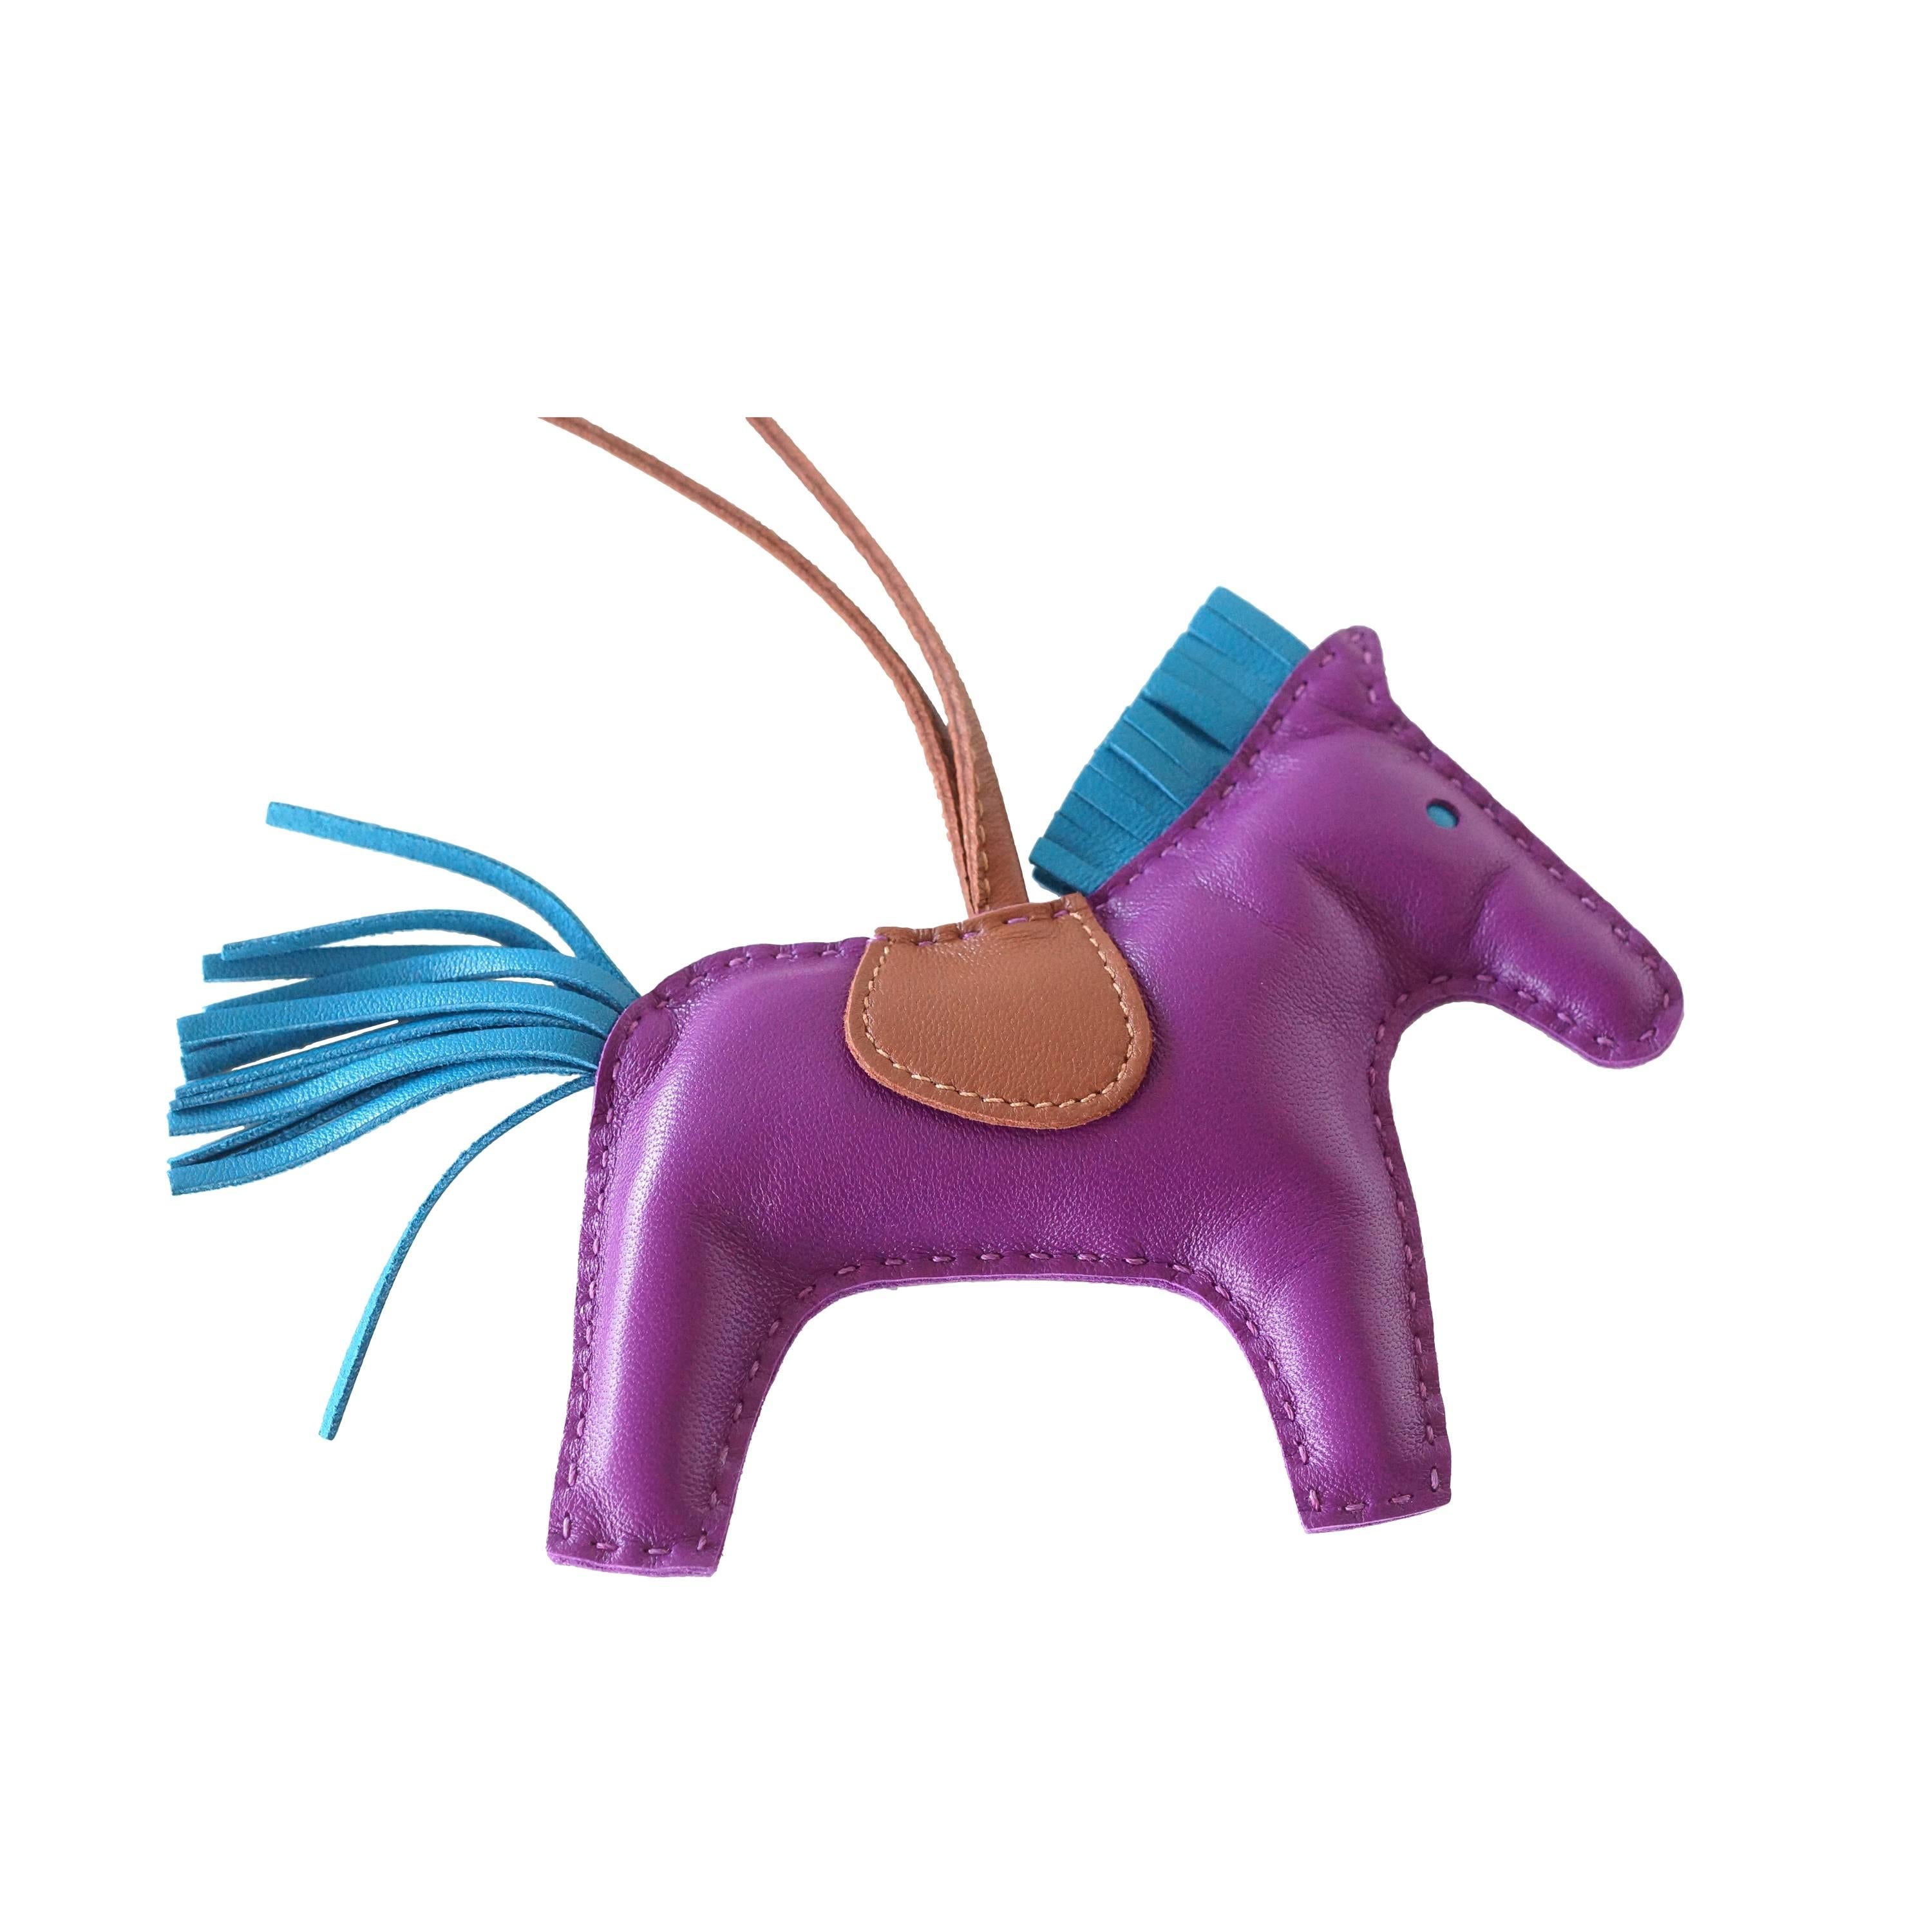 Guarranteed authentic rare limited Hermes Rodeo MM Anemone Rodeo horse bag charm with Bleu Izmir tail and mane.
La selle et le support sont Fauve.
La peau est de l'agneau Milo.  
La signature HERMES PARIS MADE IN FRANCE est estampillée sous la